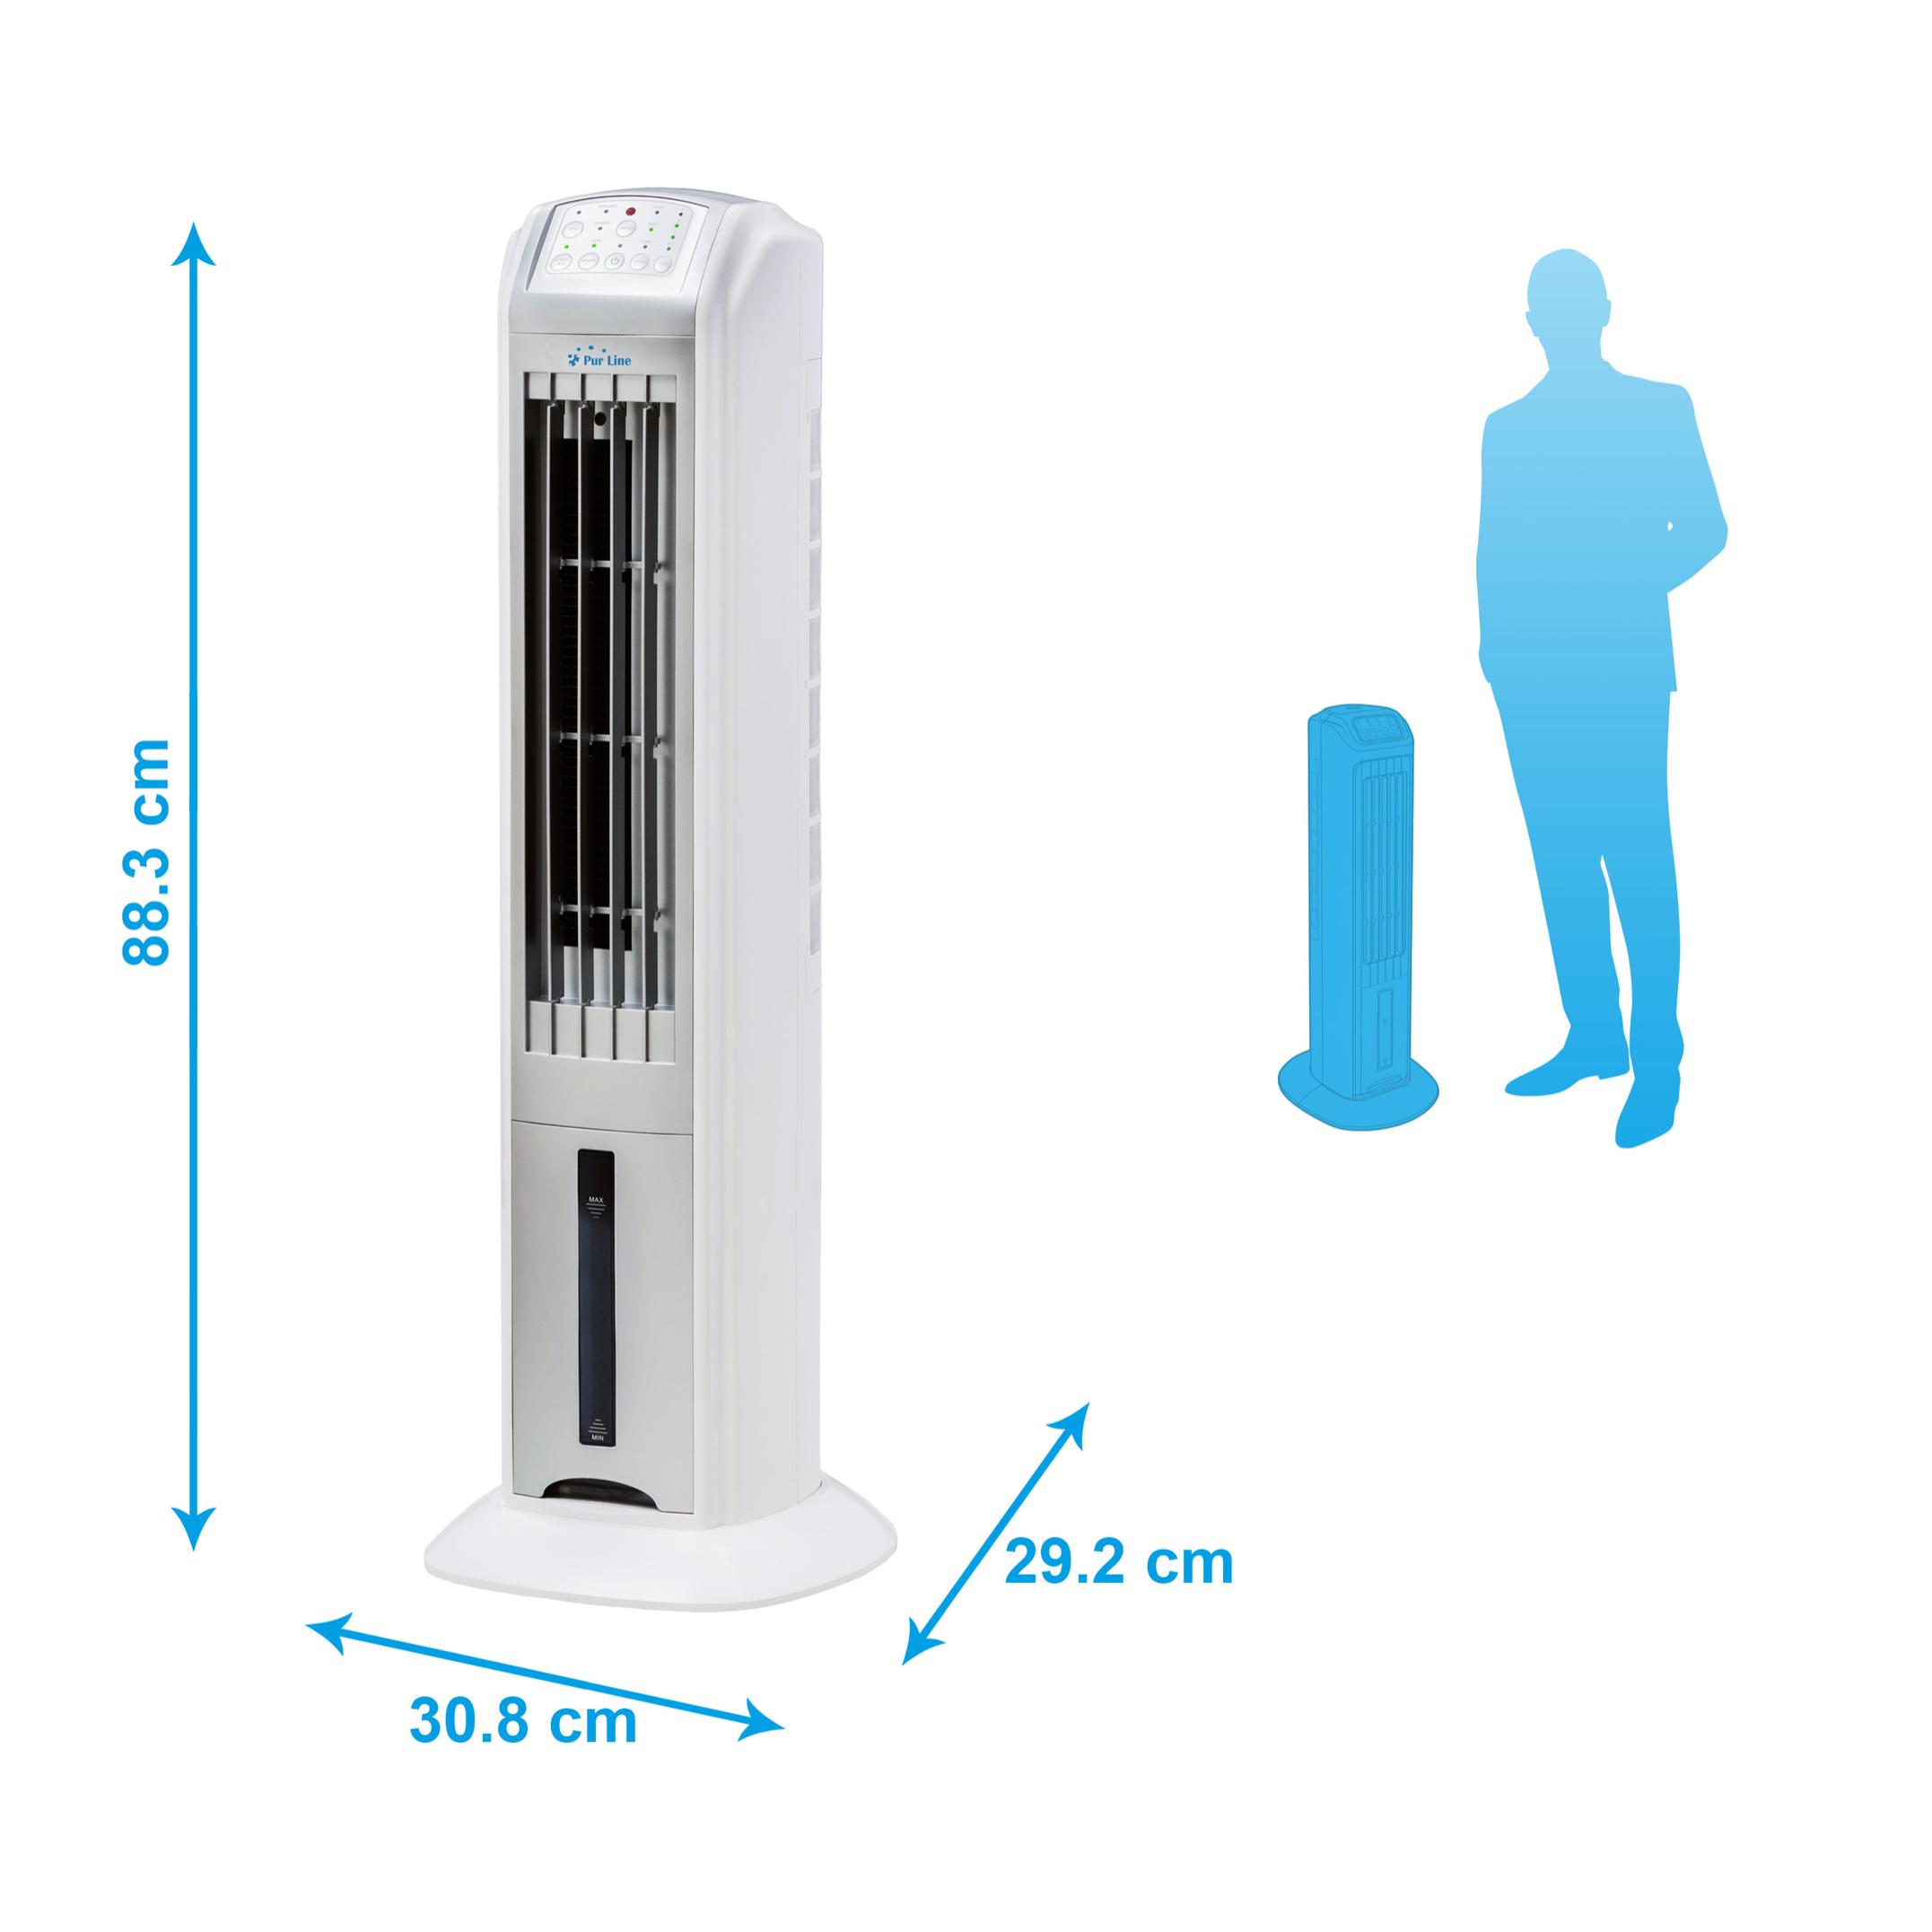 Raffrescatore evaporativo a torre/ ionizzatore, Rafy 79, facile da usare, 70 W, 3 velocitá, Purline.